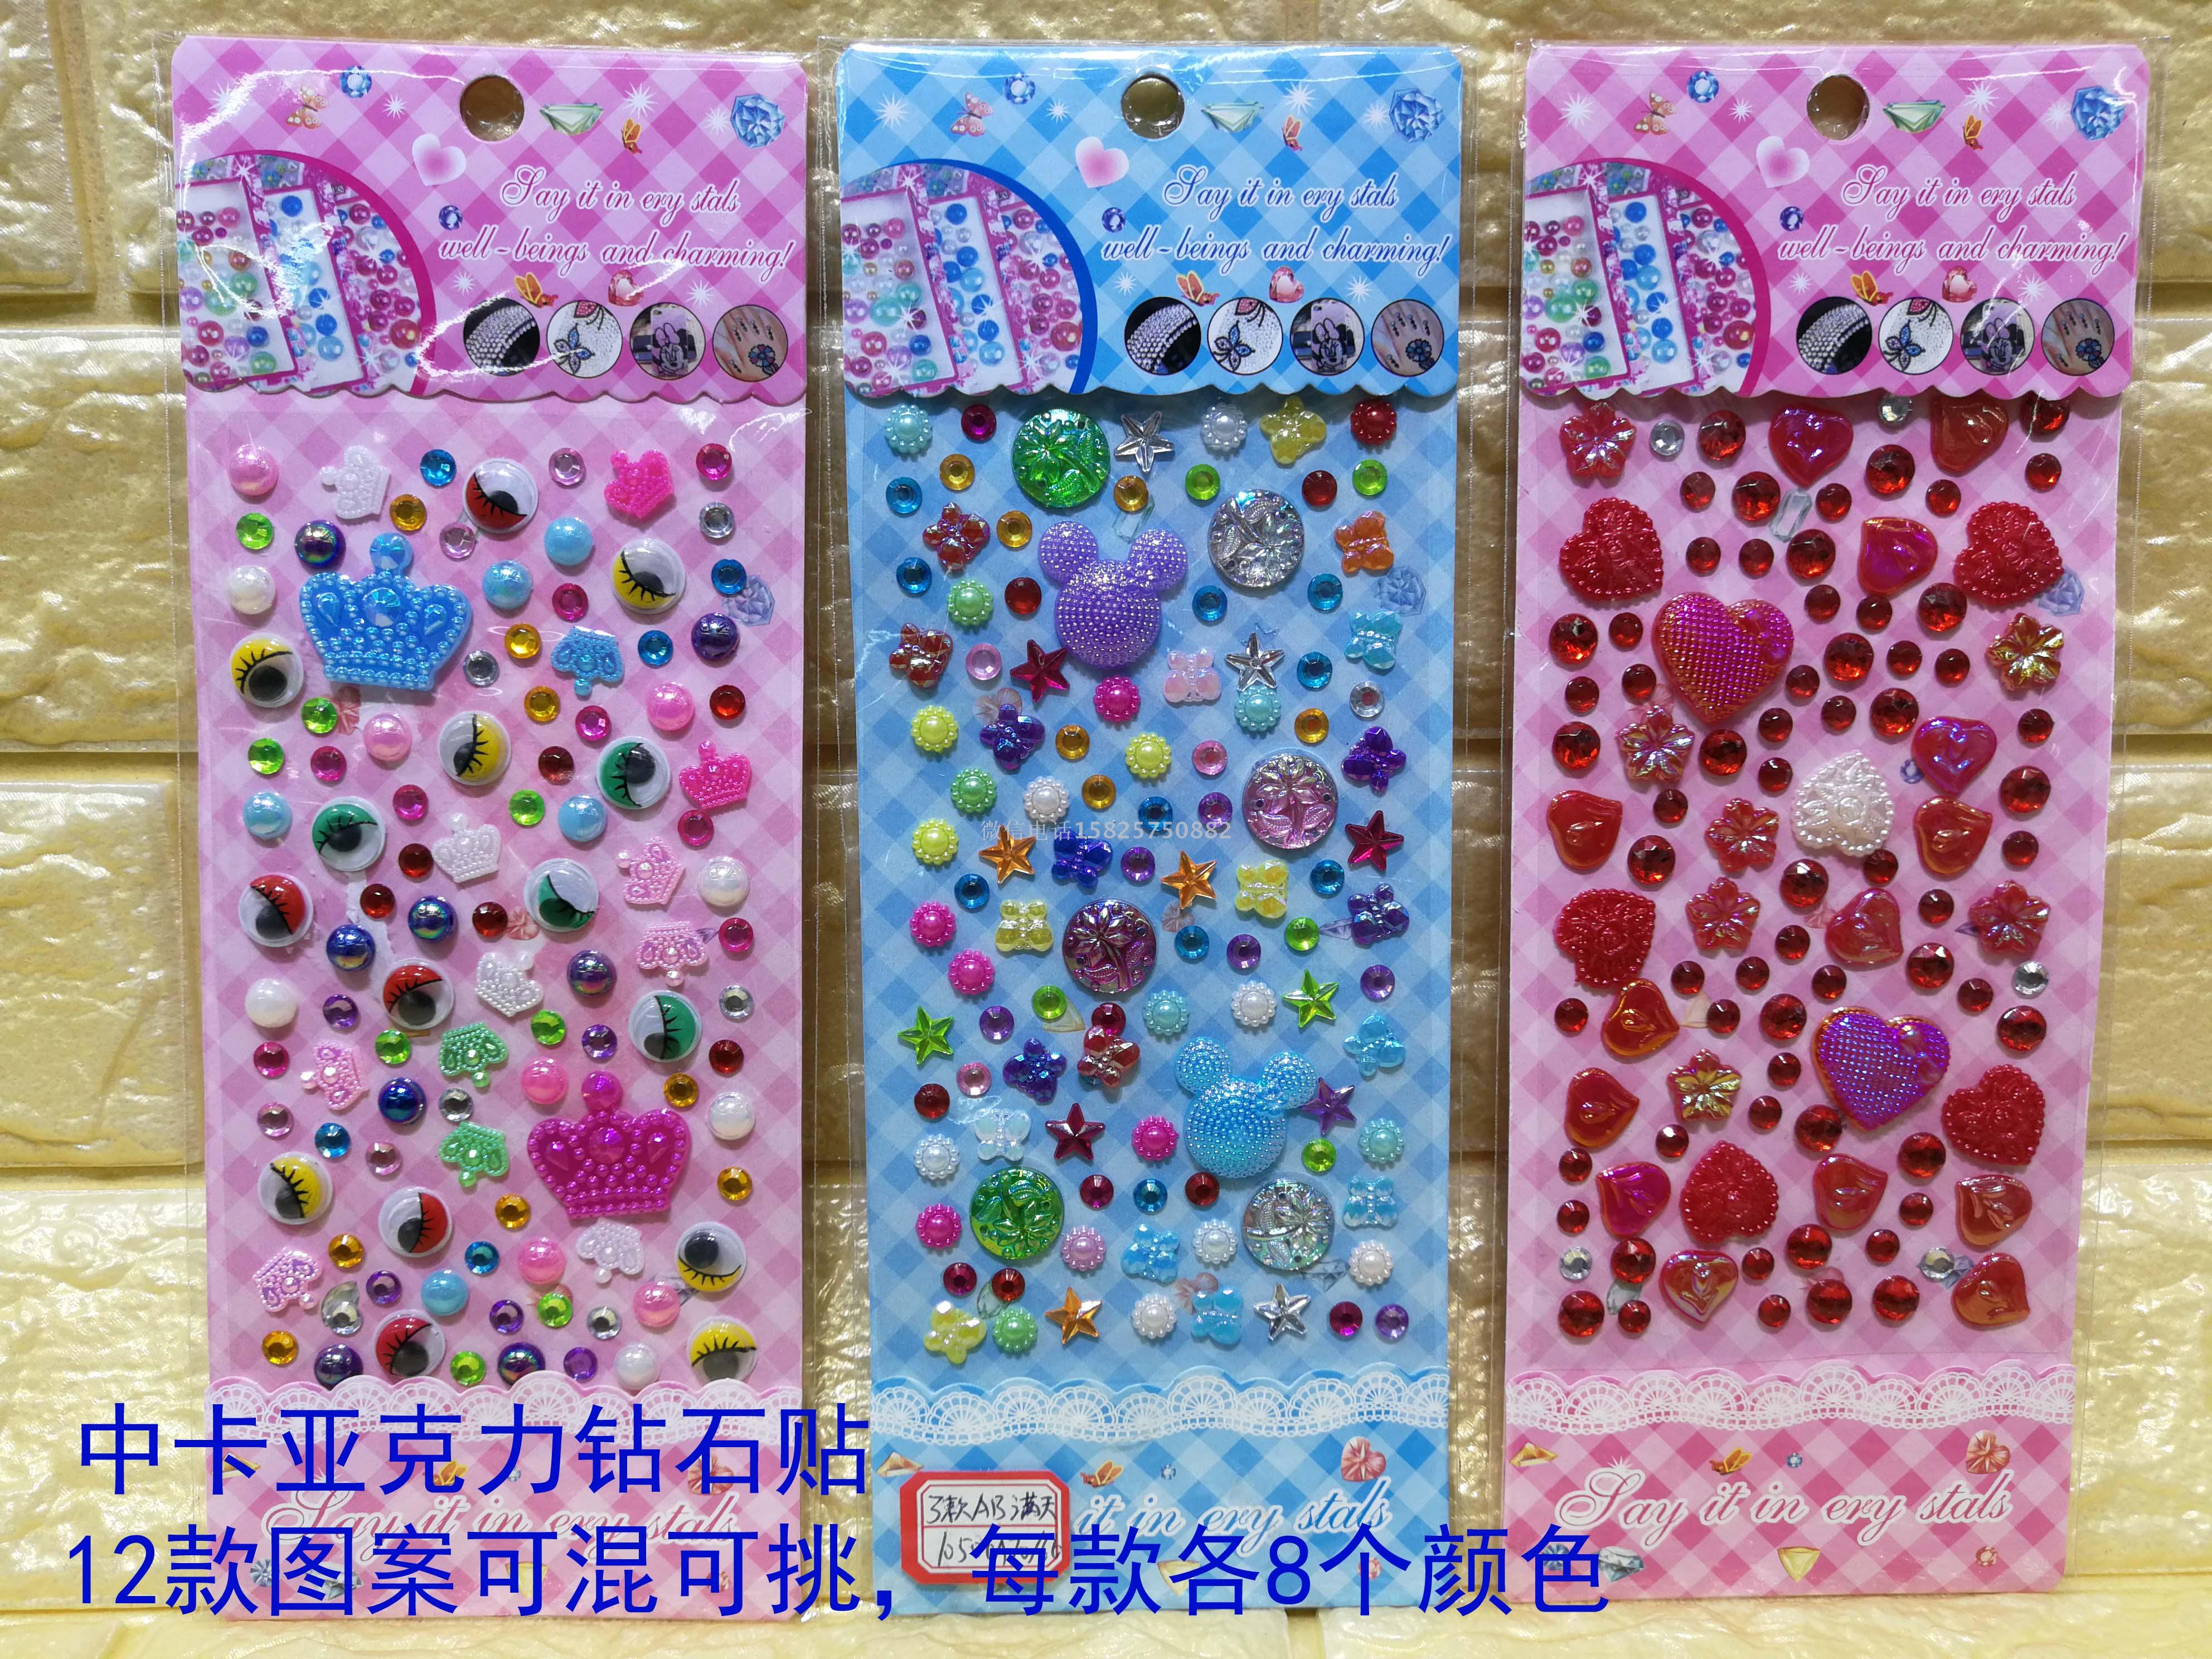 新款 创意宝石折叠炫彩手机支架 透明钻石纹手机可爱创意-阿里巴巴